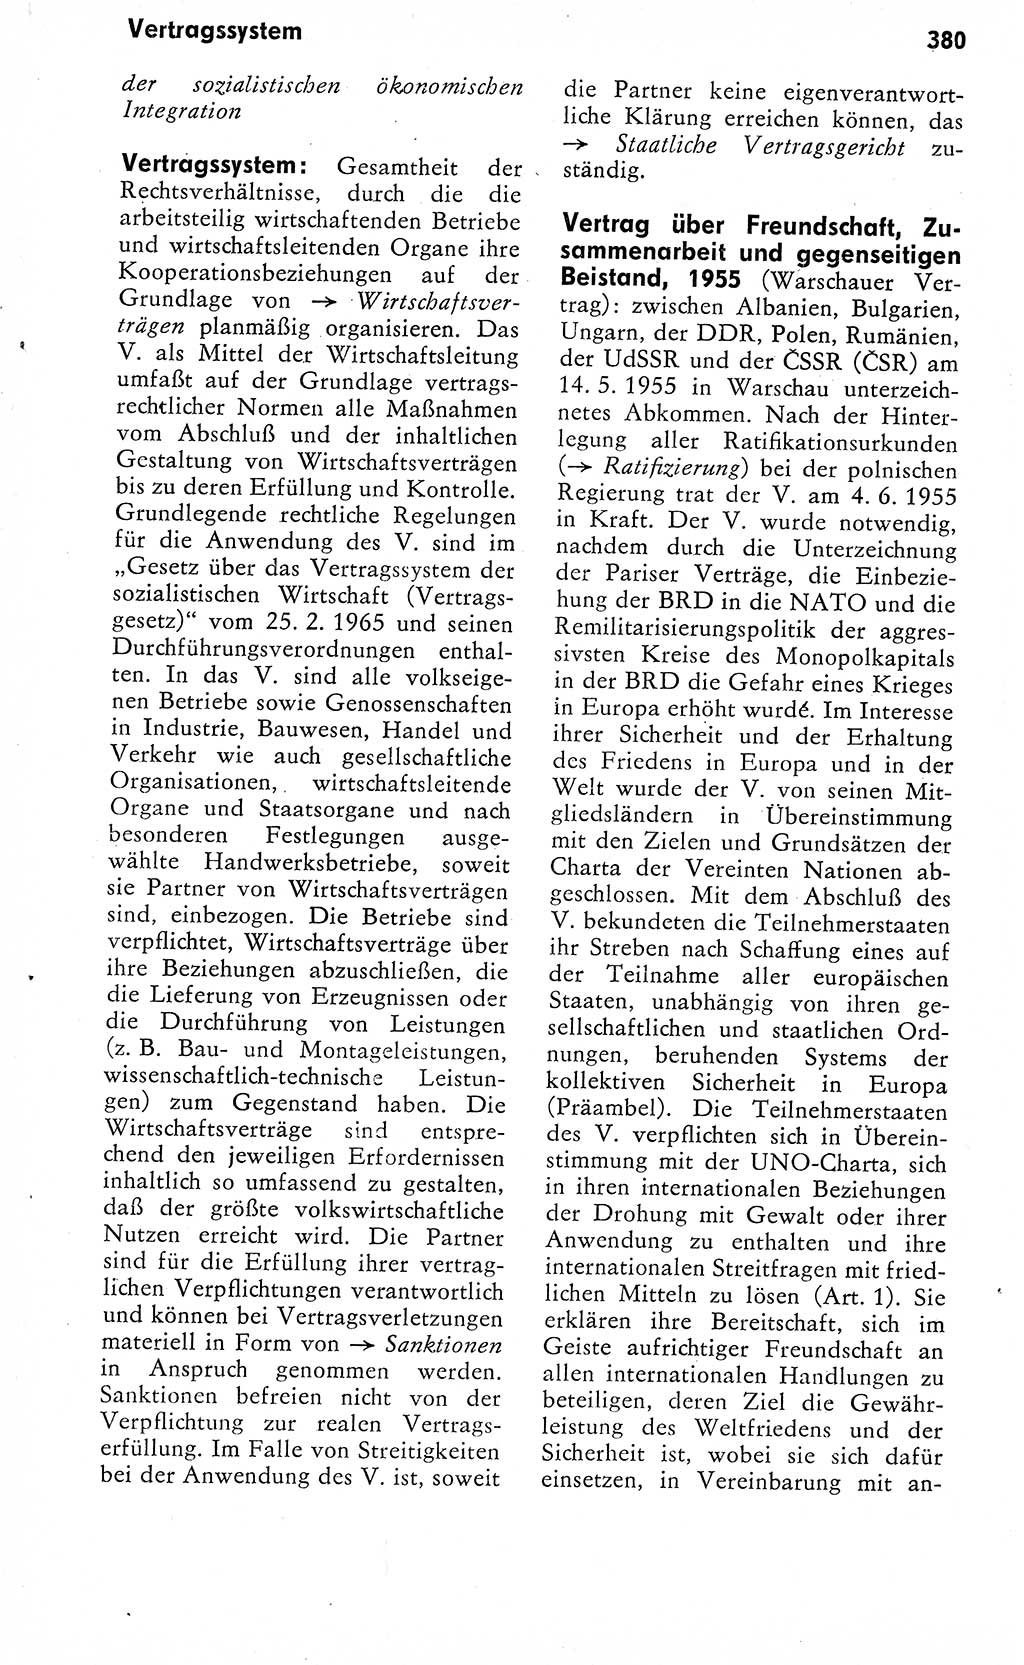 Wörterbuch zum sozialistischen Staat [Deutsche Demokratische Republik (DDR)] 1974, Seite 380 (Wb. soz. St. DDR 1974, S. 380)